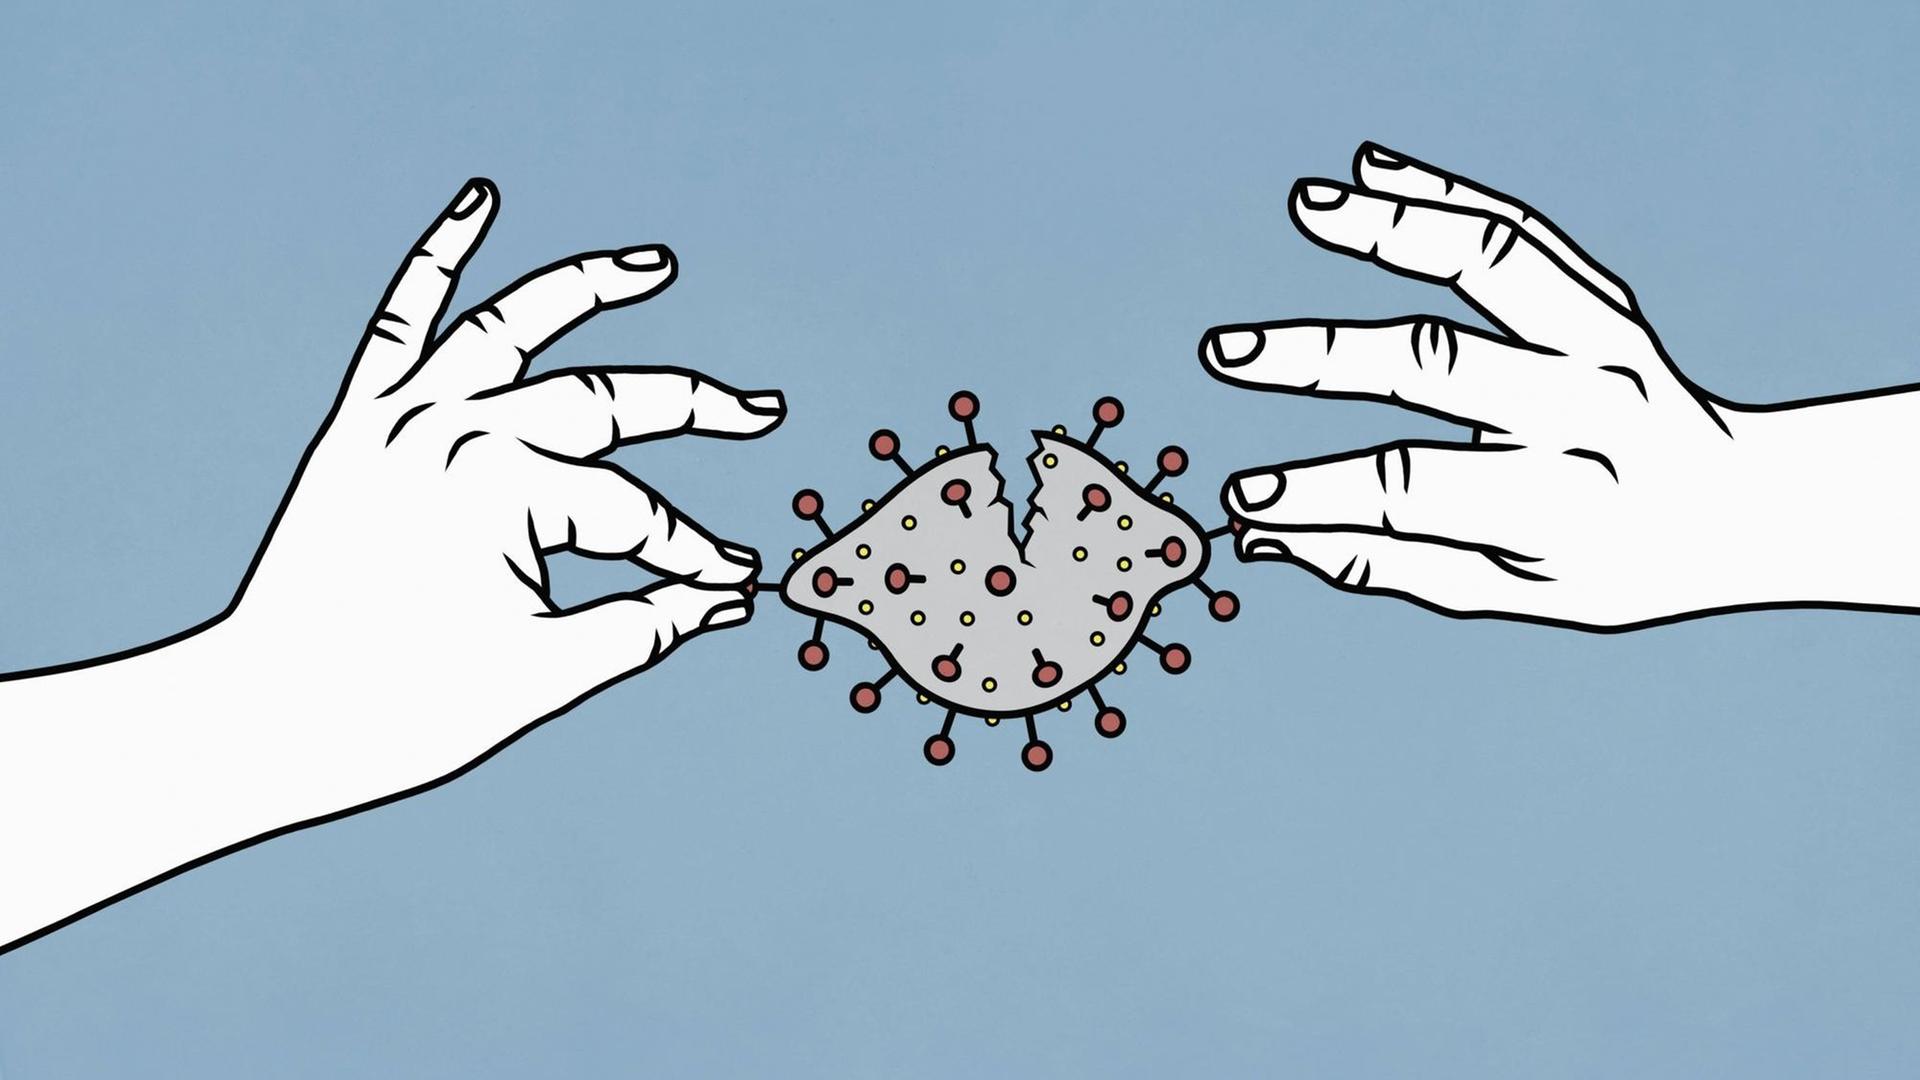 Zwei Hände ziehen ein Coronavirus auseinander, das zerreisst.